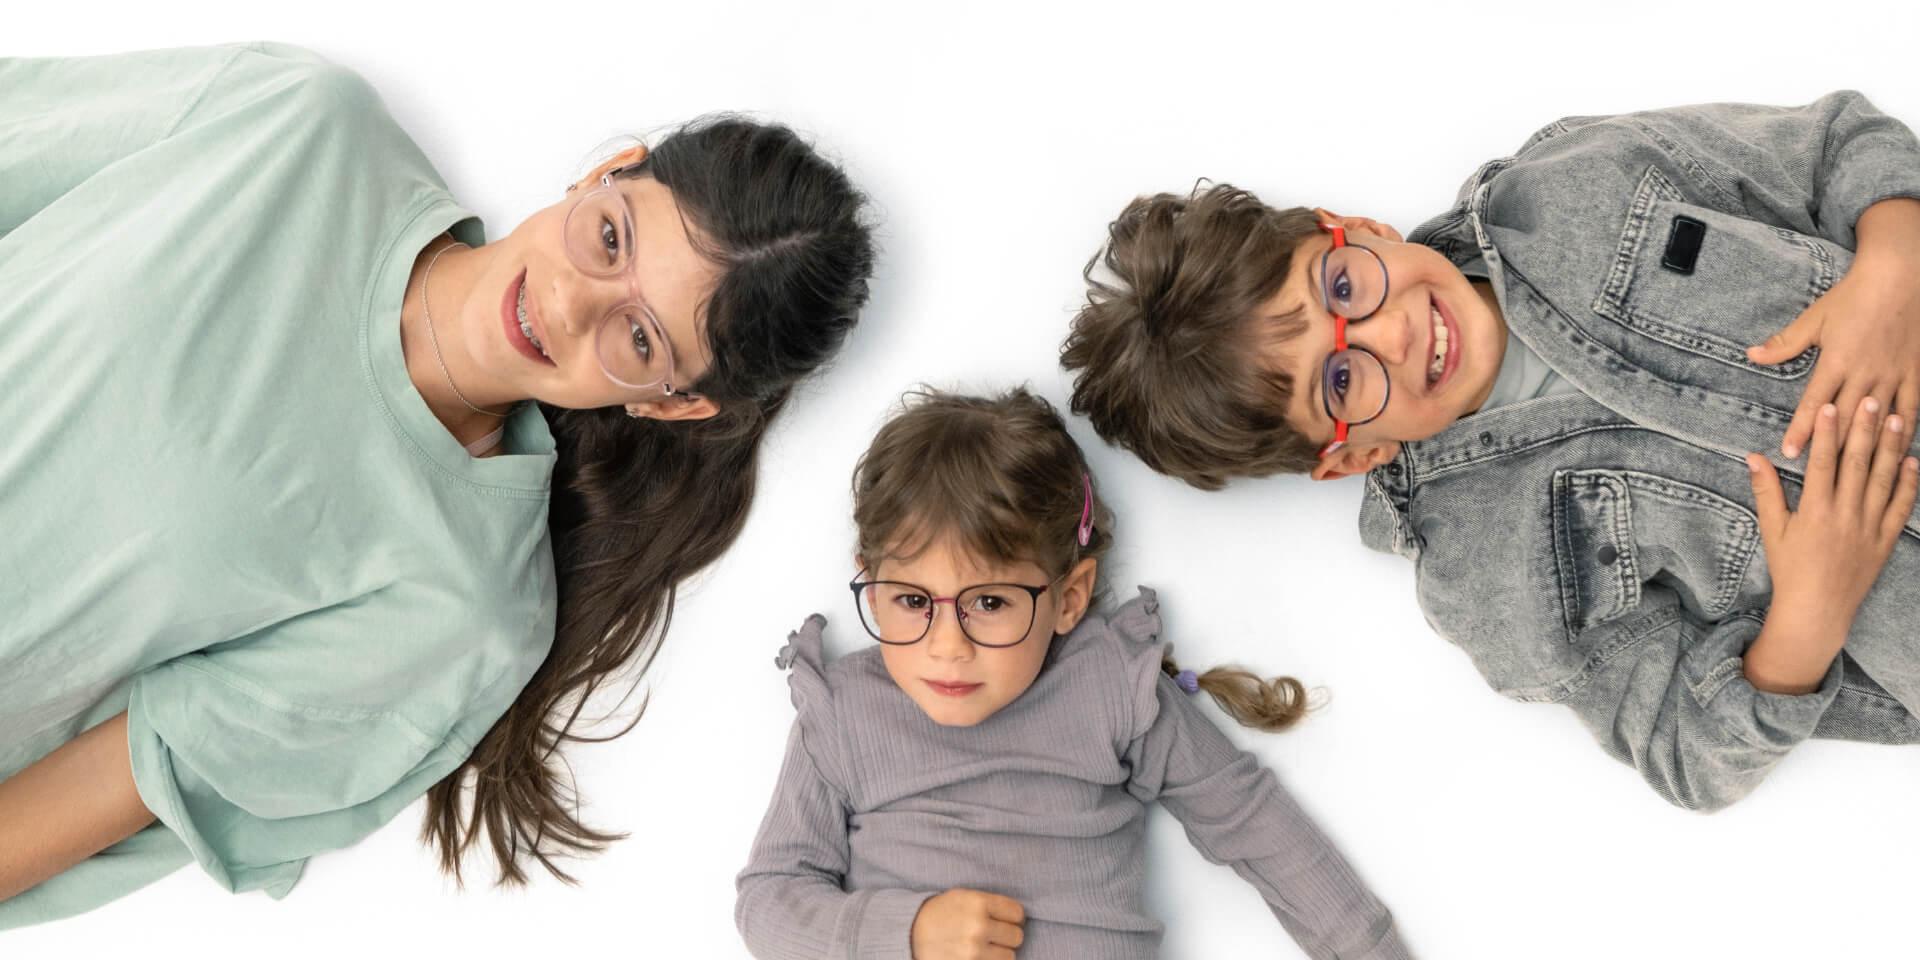 En teenager og to mindre børn ligger på gulvet og har ZEISS myopi-briller på.